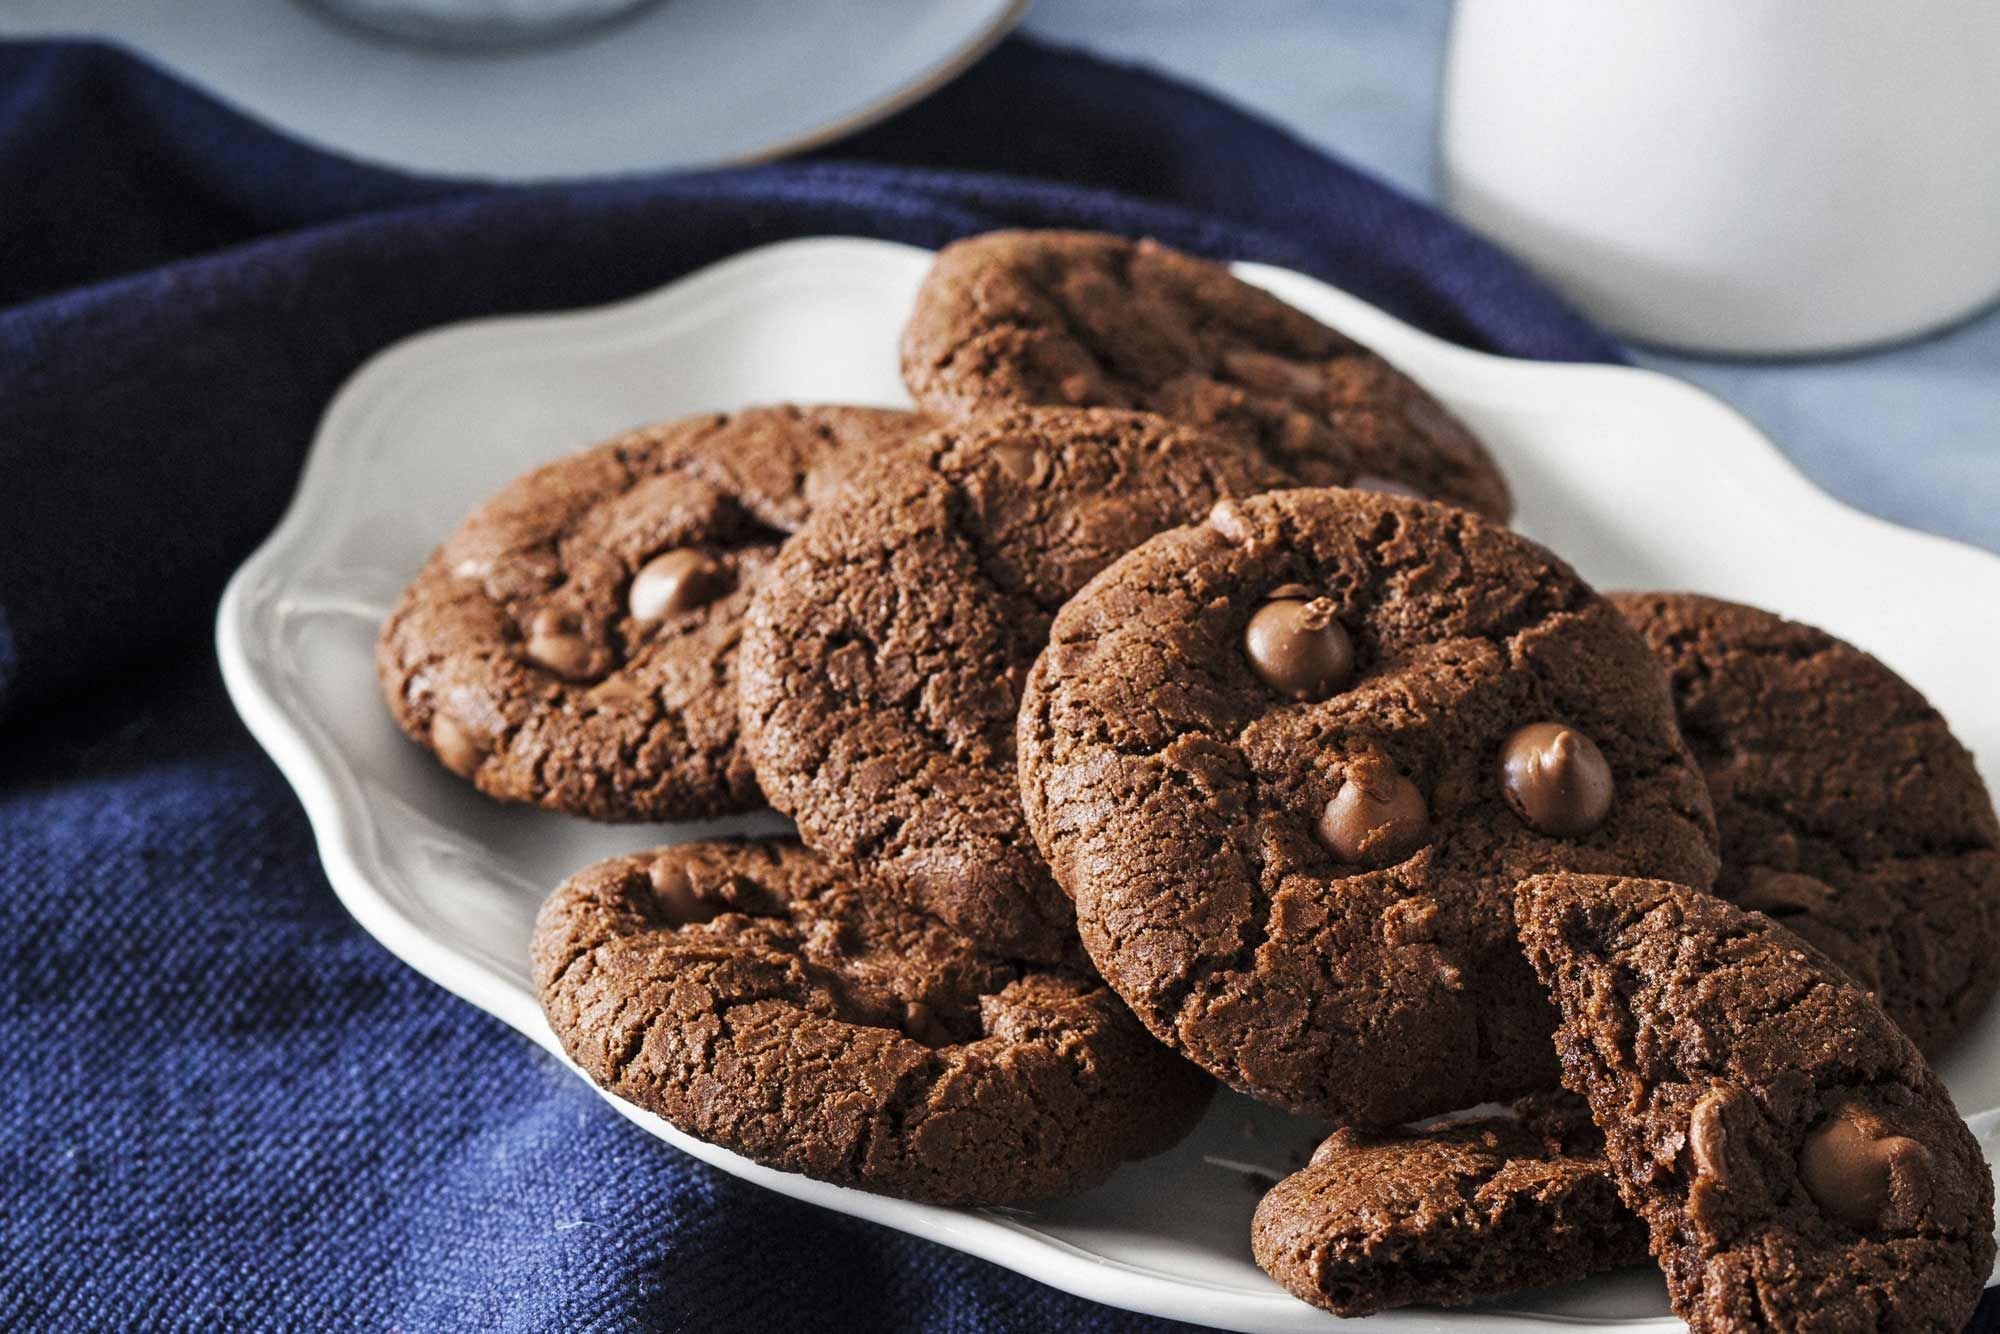 Windows cookies. Йорг кукис. Американ кукис. Кукис шоколадный. Печенье.